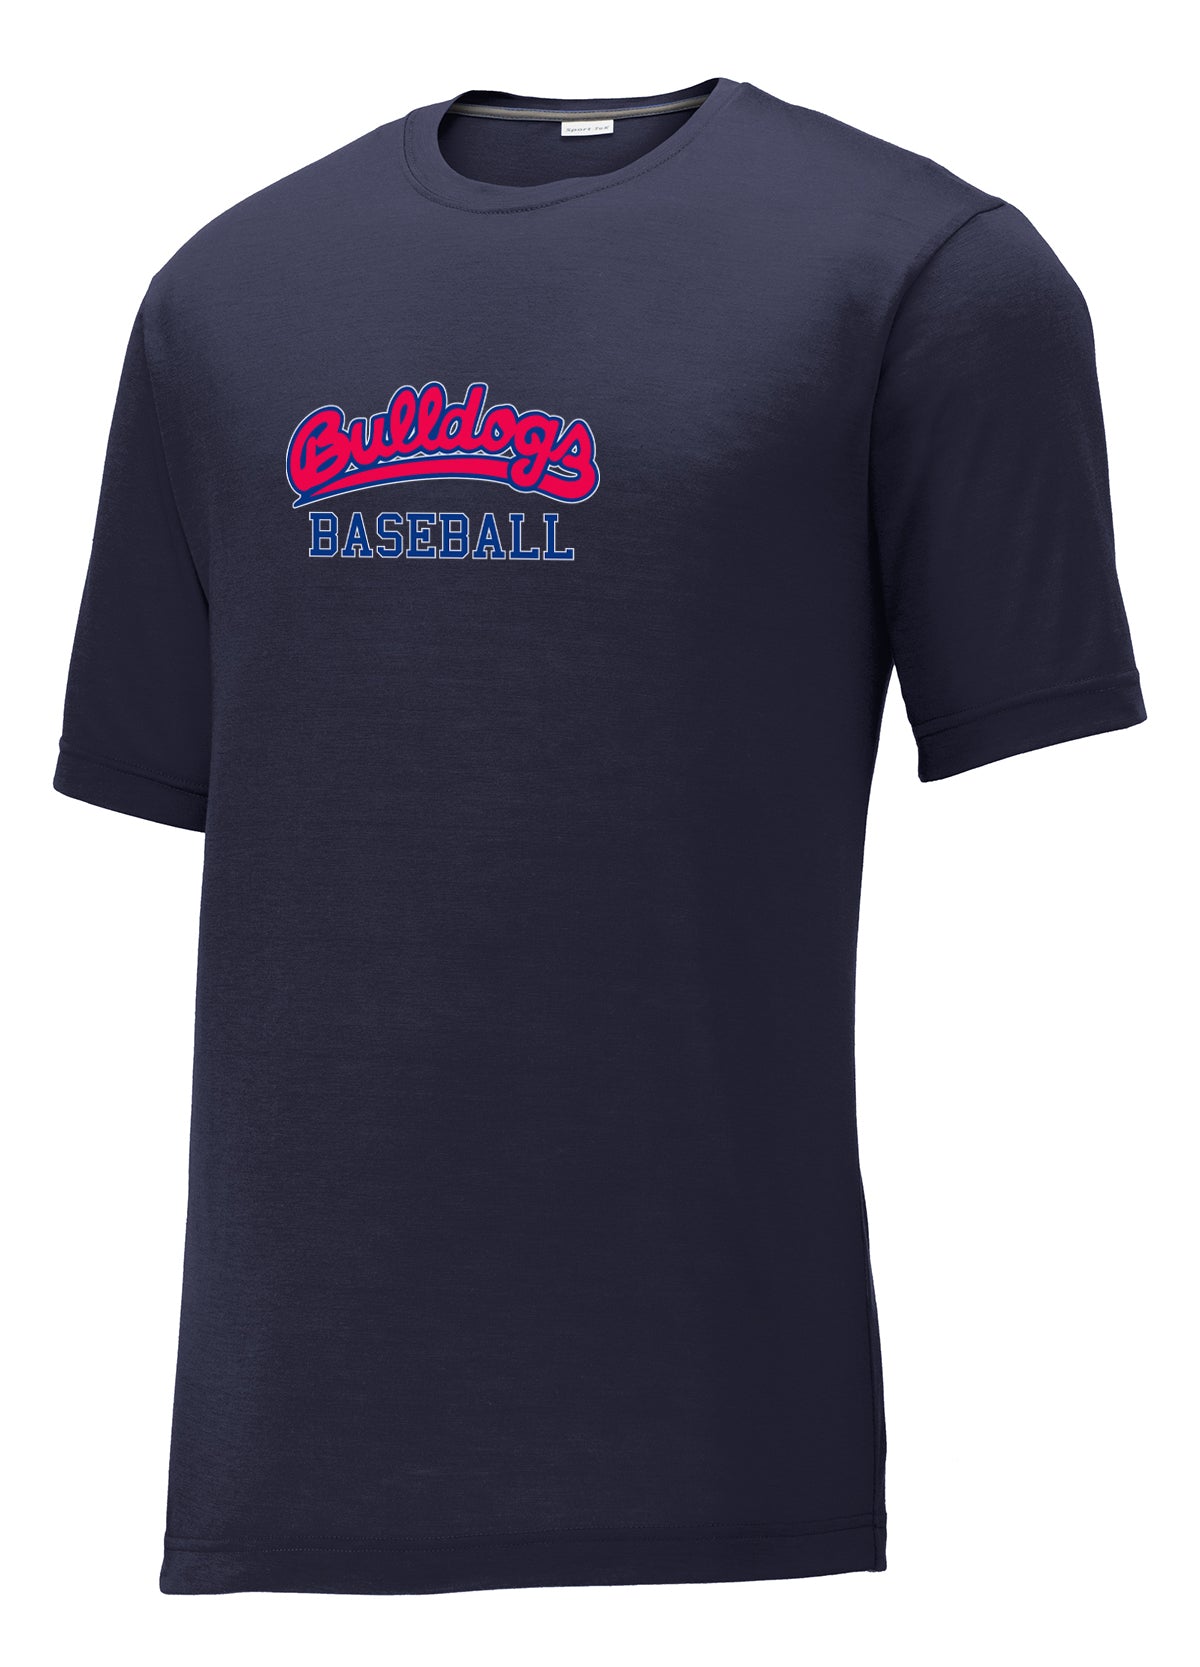 Michigan Bulldogs Baseball CottonTouch Performance T-Shirt